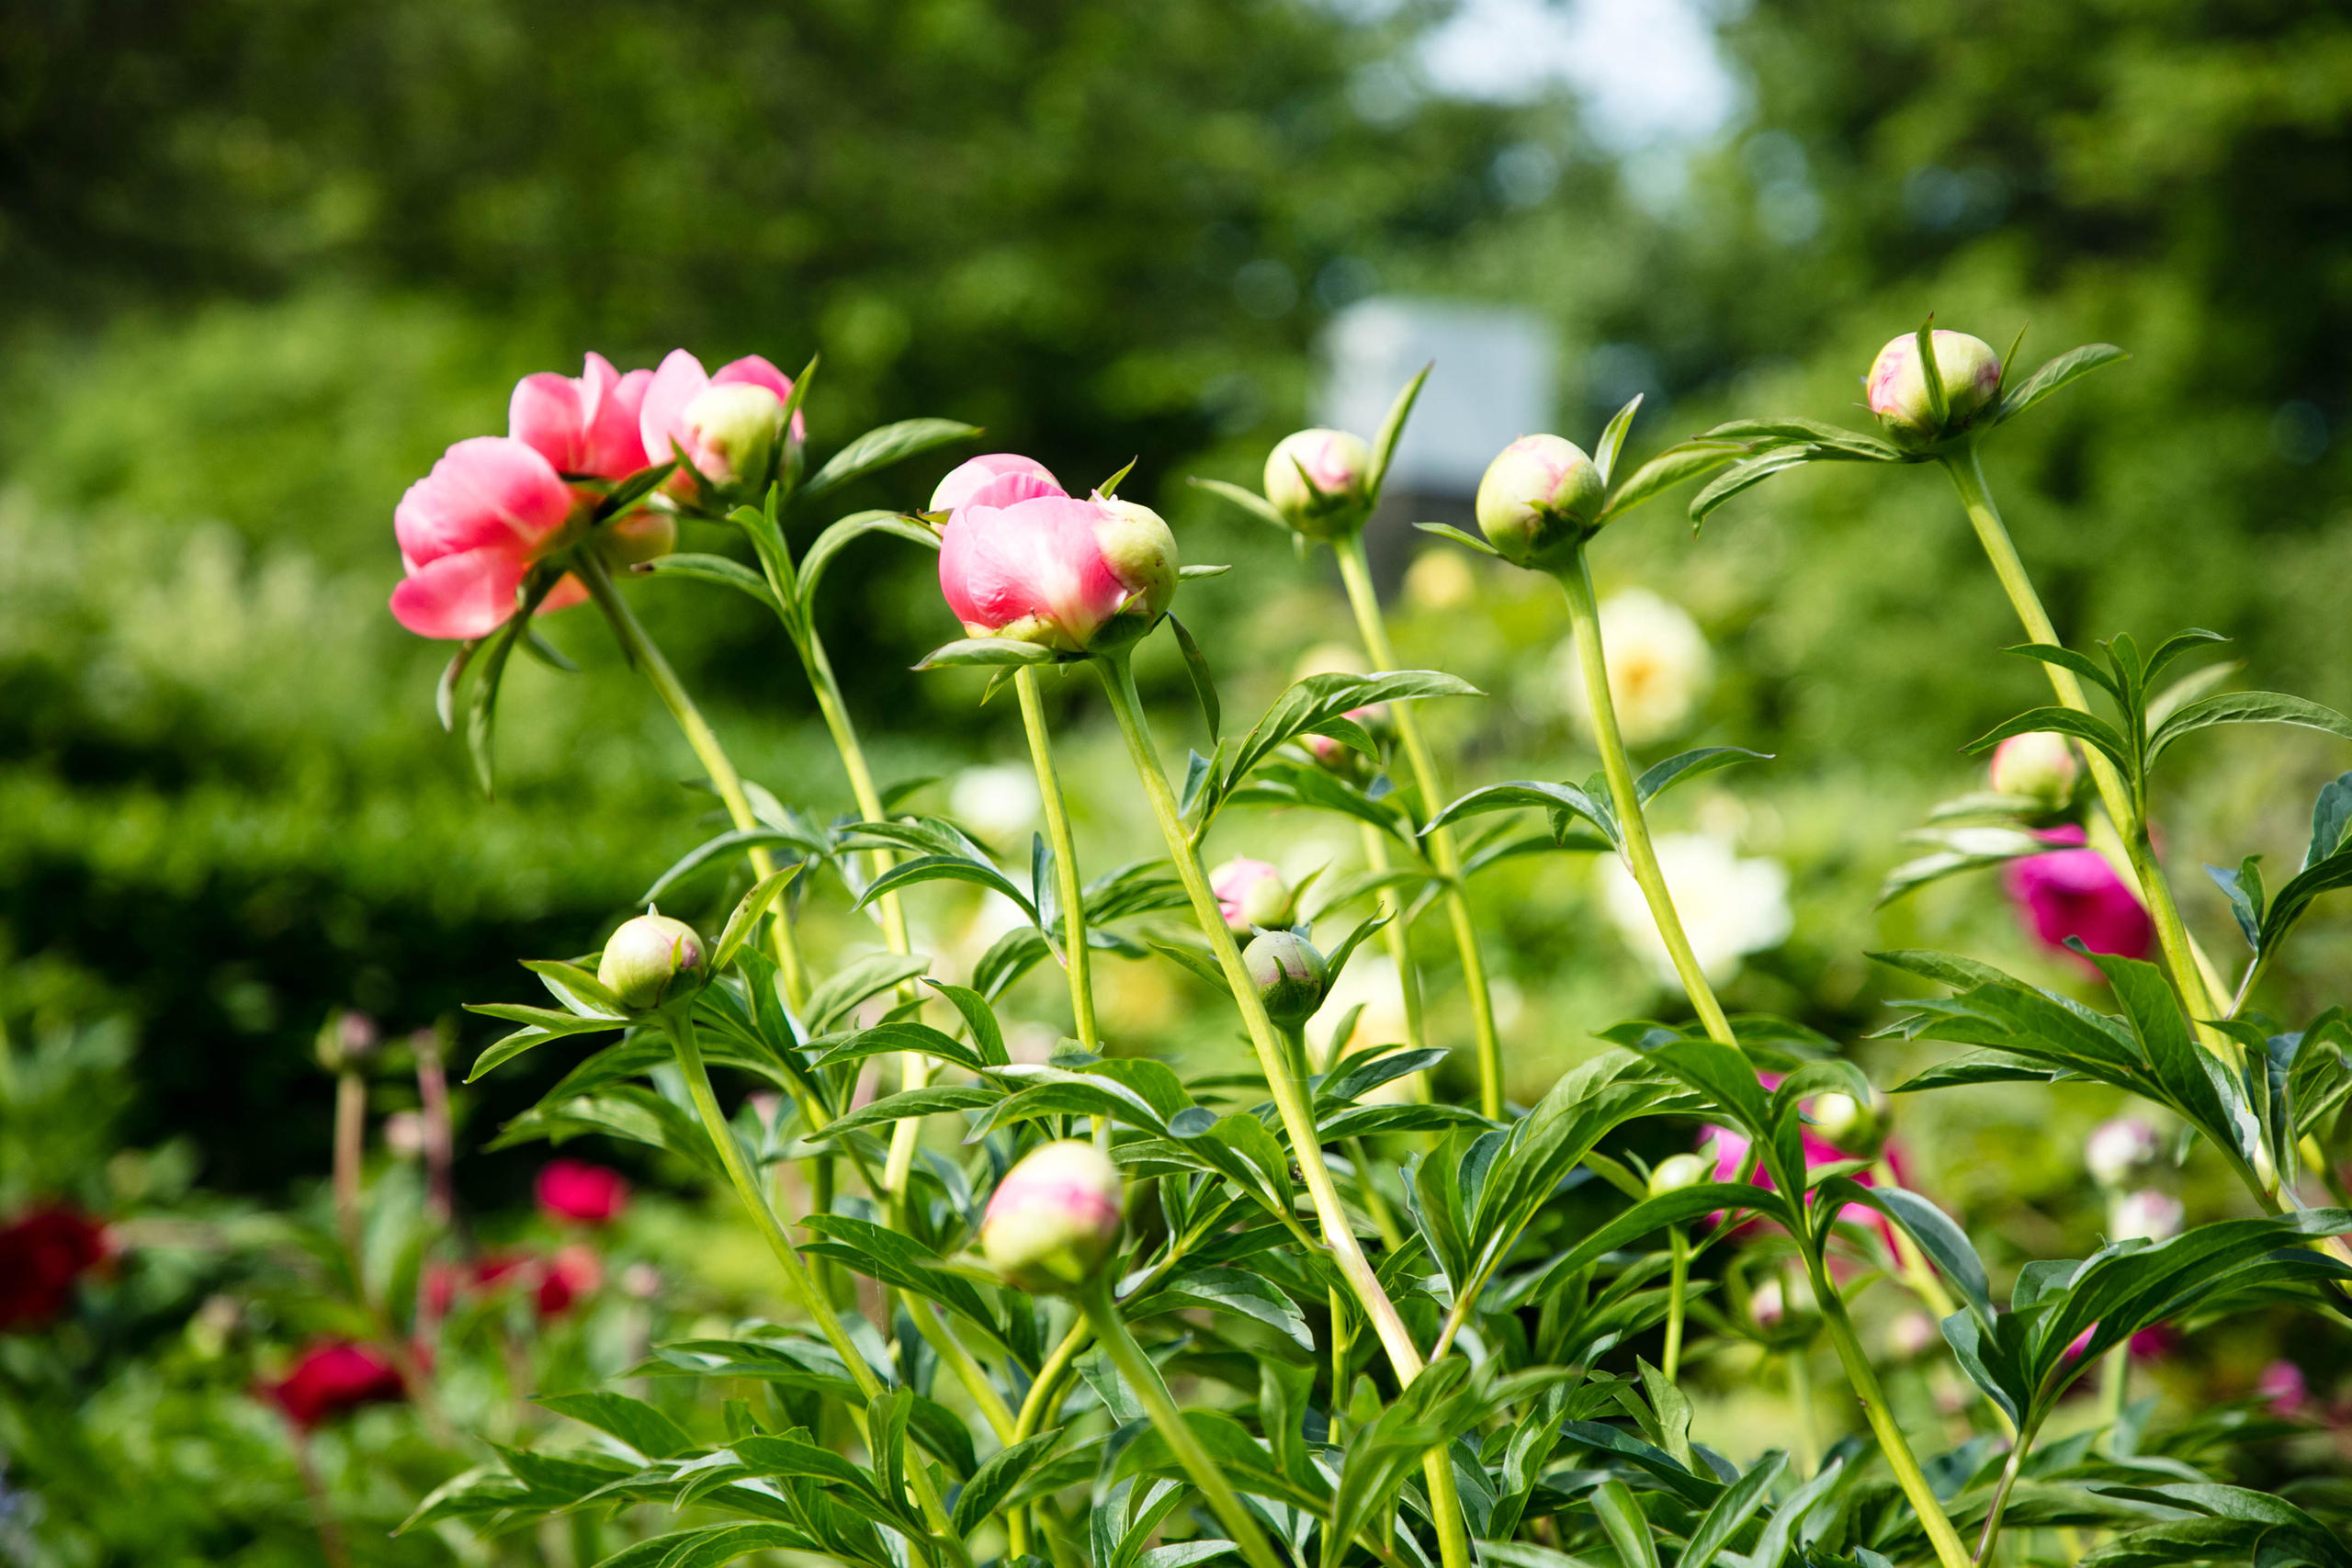 الحديقة تضم أيضا زهور فاونيا هجينة.